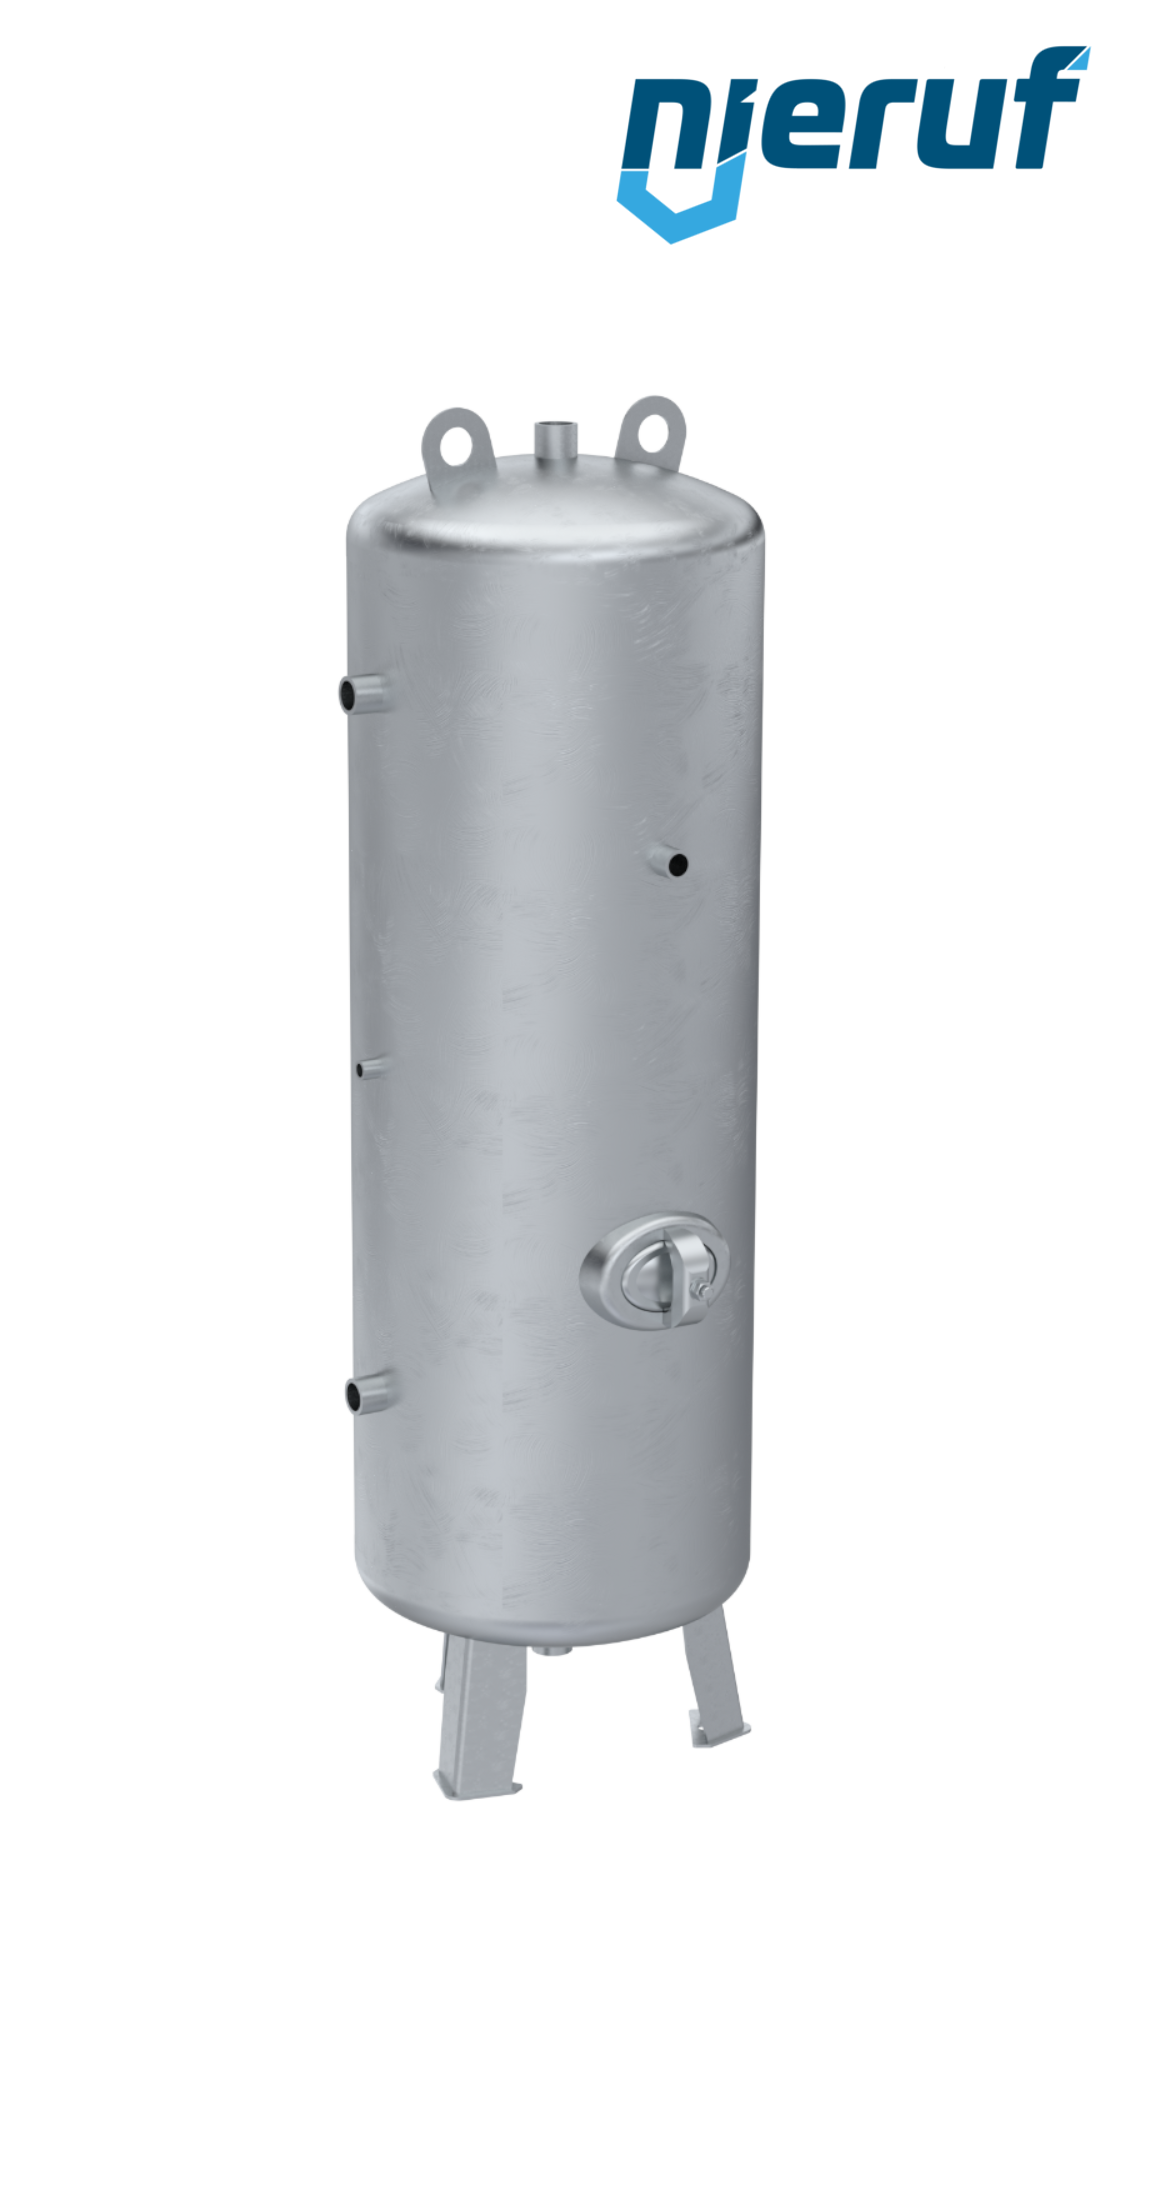 Serbatoi per alta pressione verticale BE02 150 litri, 0-31 bar, acciaio zincato